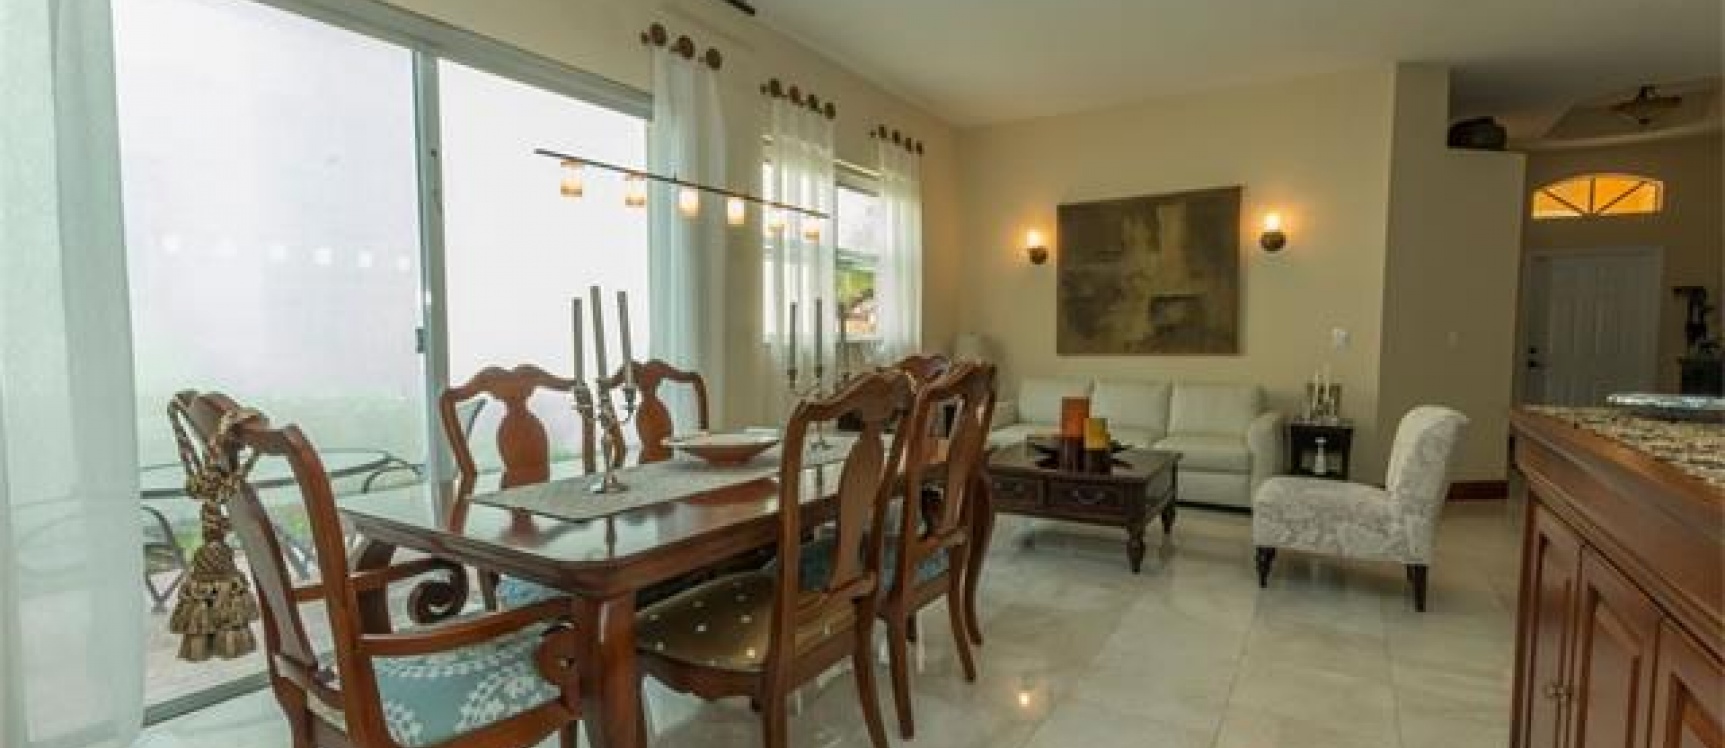 GeoBienes - Casa en Miami- Florida de venta - Plusvalia Guayaquil Casas de venta y alquiler Inmobiliaria Ecuador